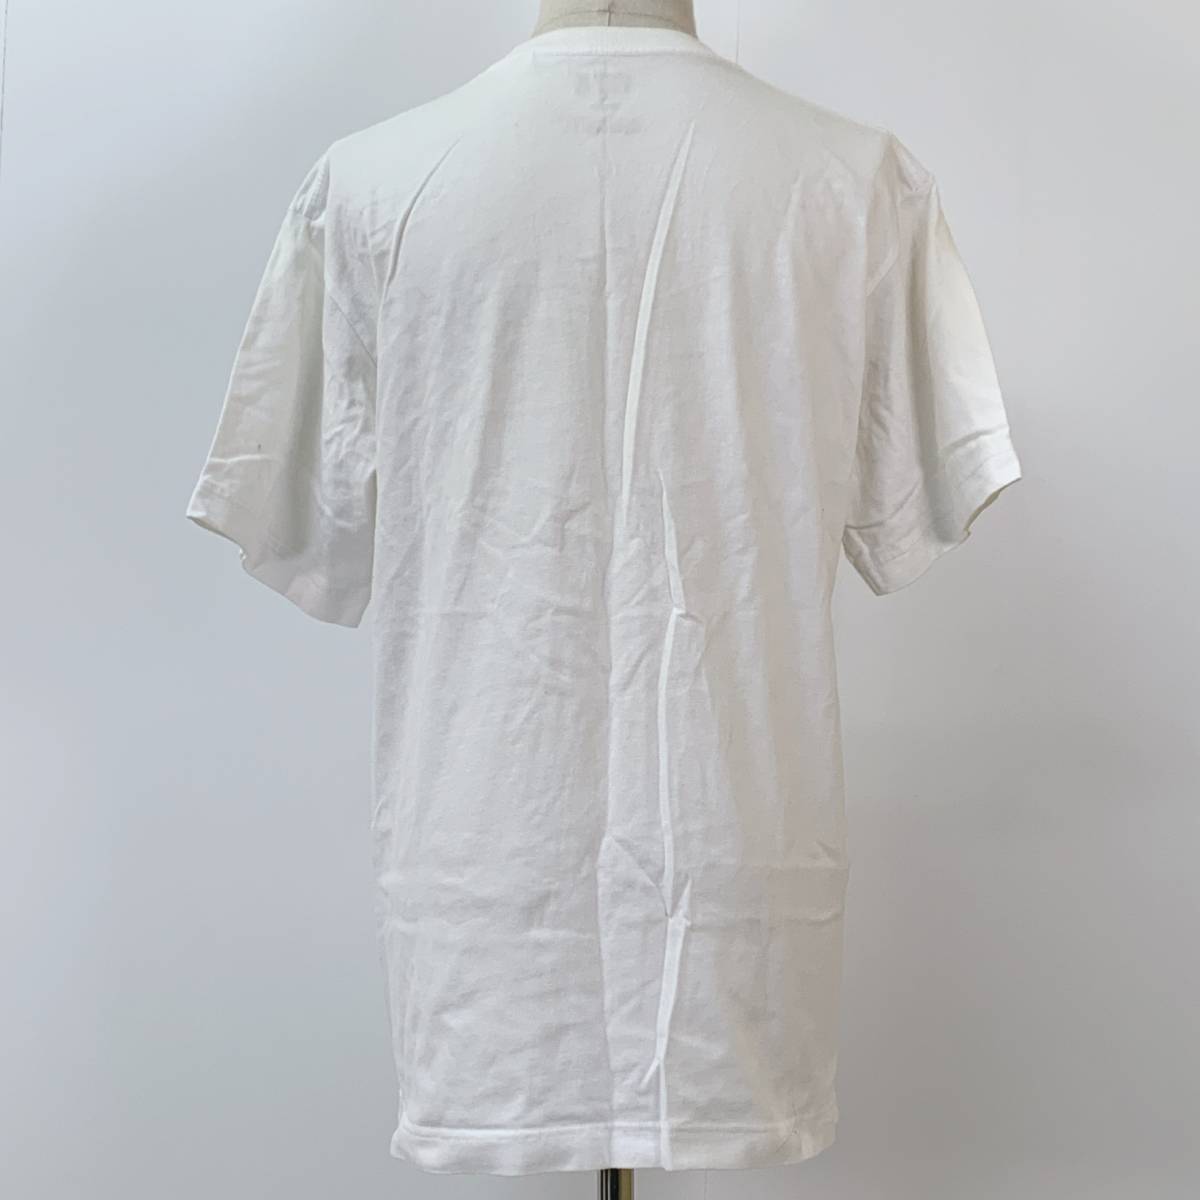 S654 UNIQLO ユニクロ ユニセックス Tシャツ 半袖 人気 M 白 綿100% 万能 シンプルデイリーカジュアル 前プリント ドラゴンボール _画像3